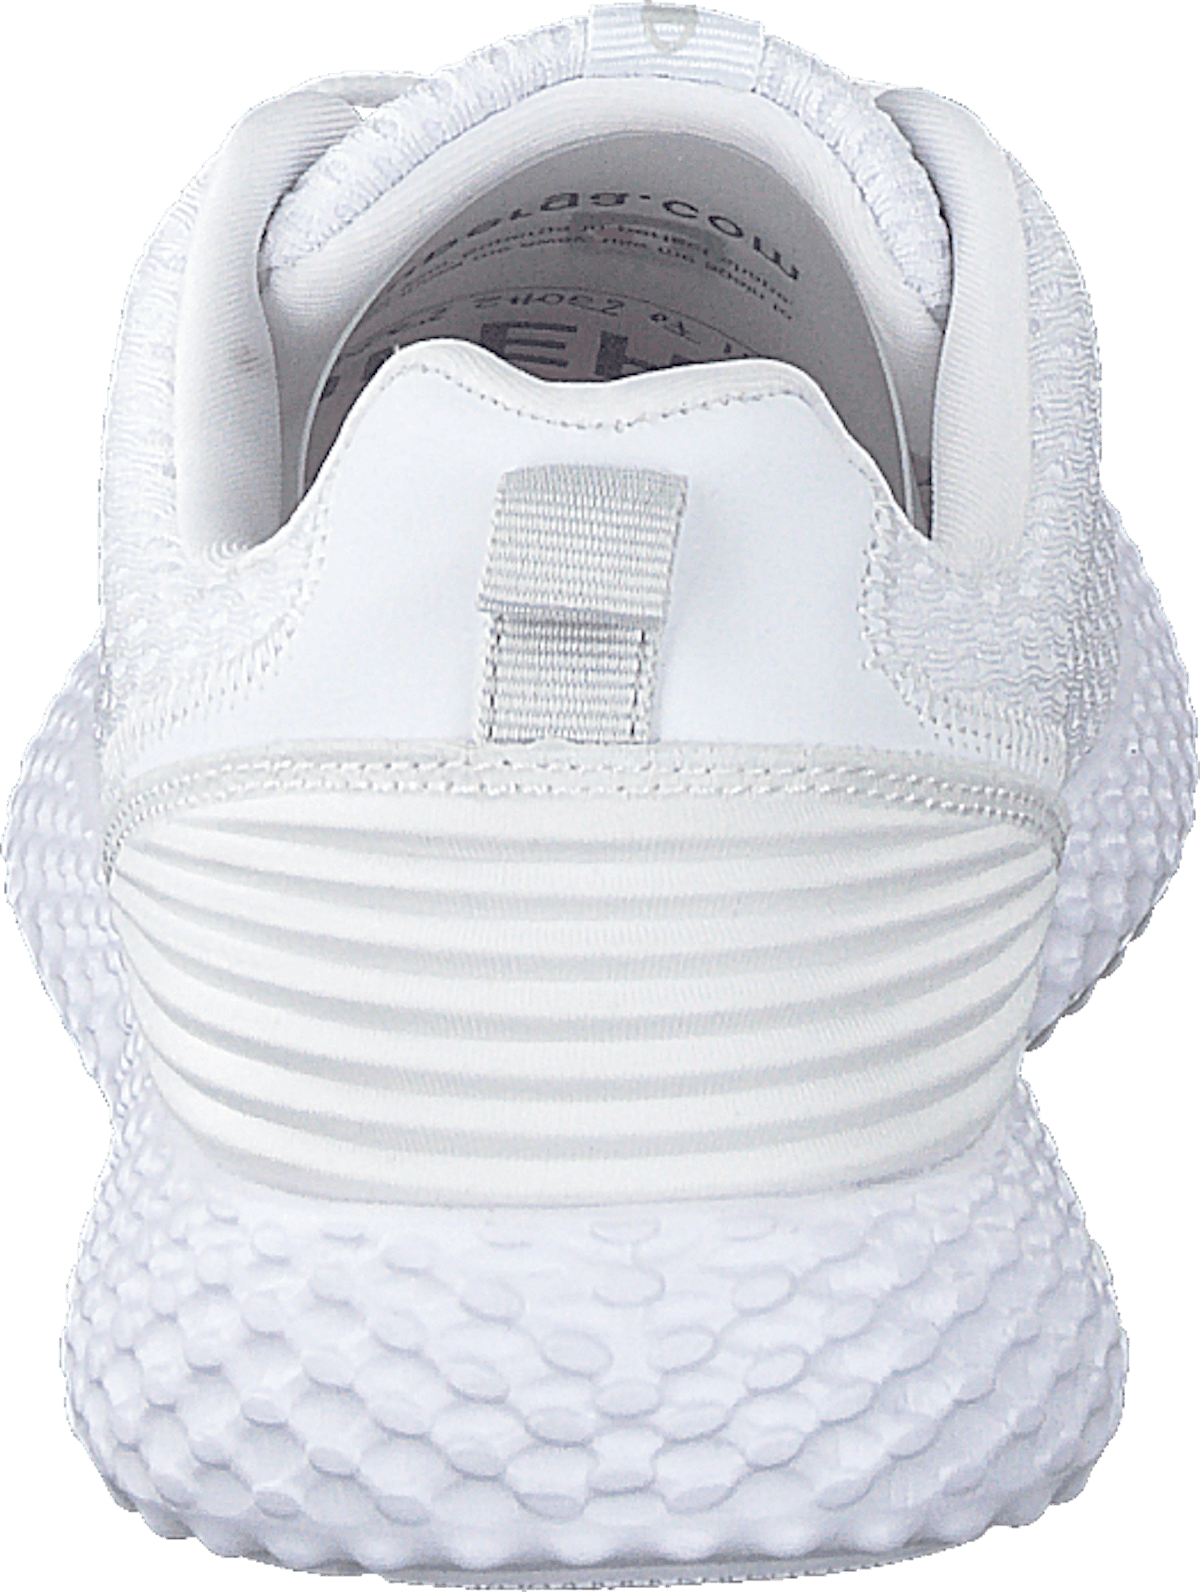 Low Cut Shoe Sprint White B